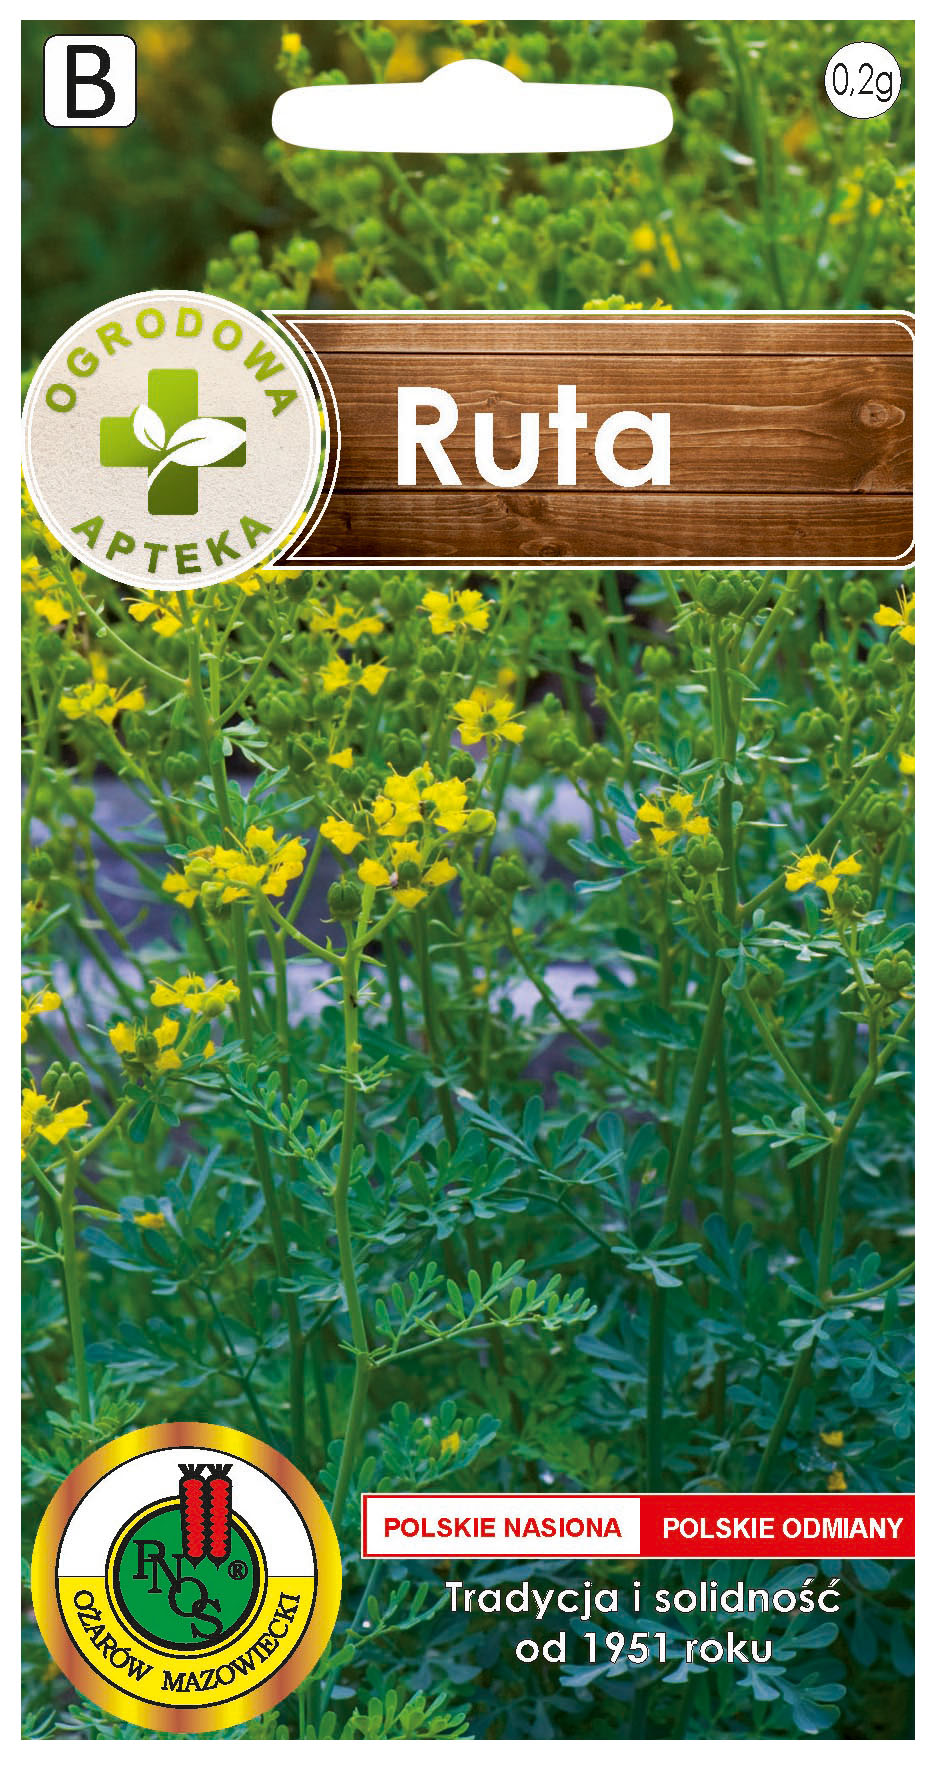 Ruta to roślina wieloletnia, zazwyczaj pojedyncza, o wysokości do 1m.